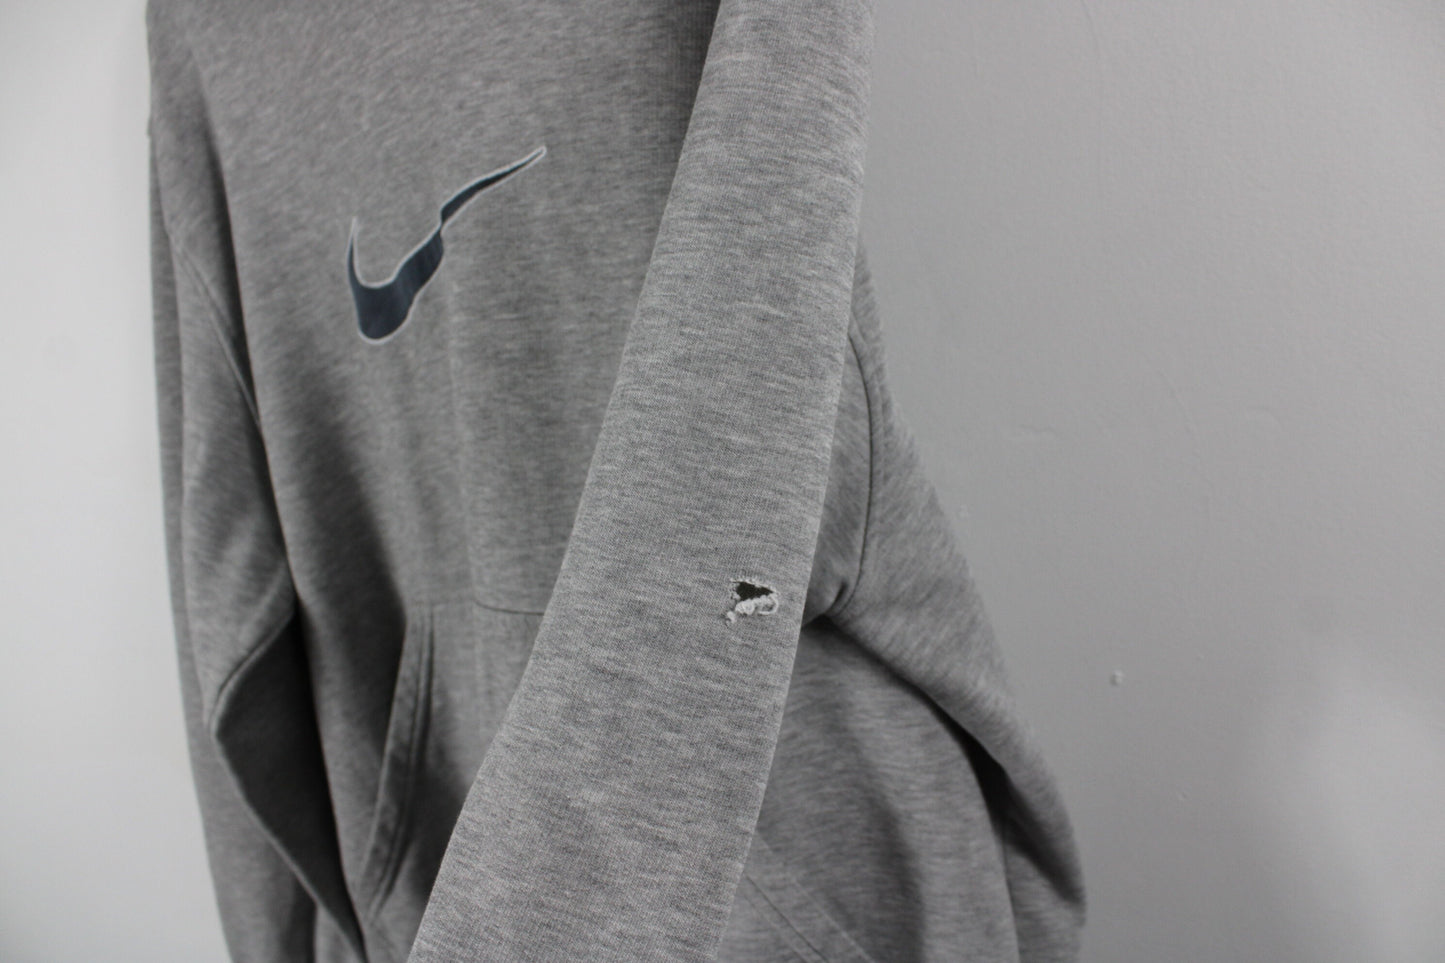 Nike USA Sweater / Vintage Swoosh Logo Hoodie Sweatshirt / 90s Hip-Hop Hoody / Streetwear Clothing